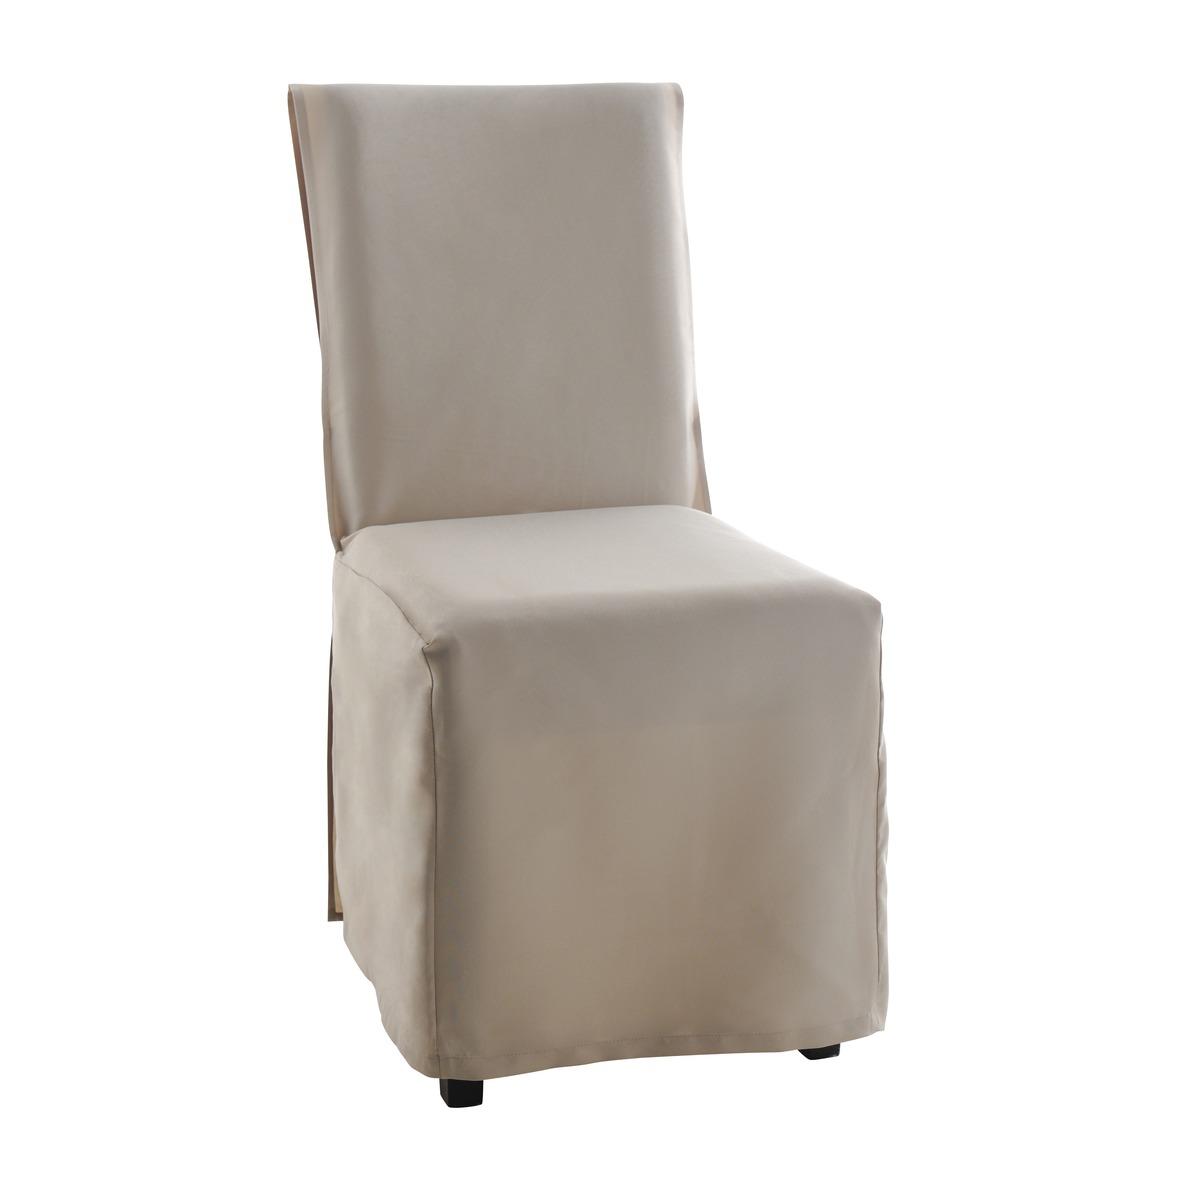 Housse de chaise en polyester pour dos droit - 45 x 45 x H 100 cm - Différents coloris